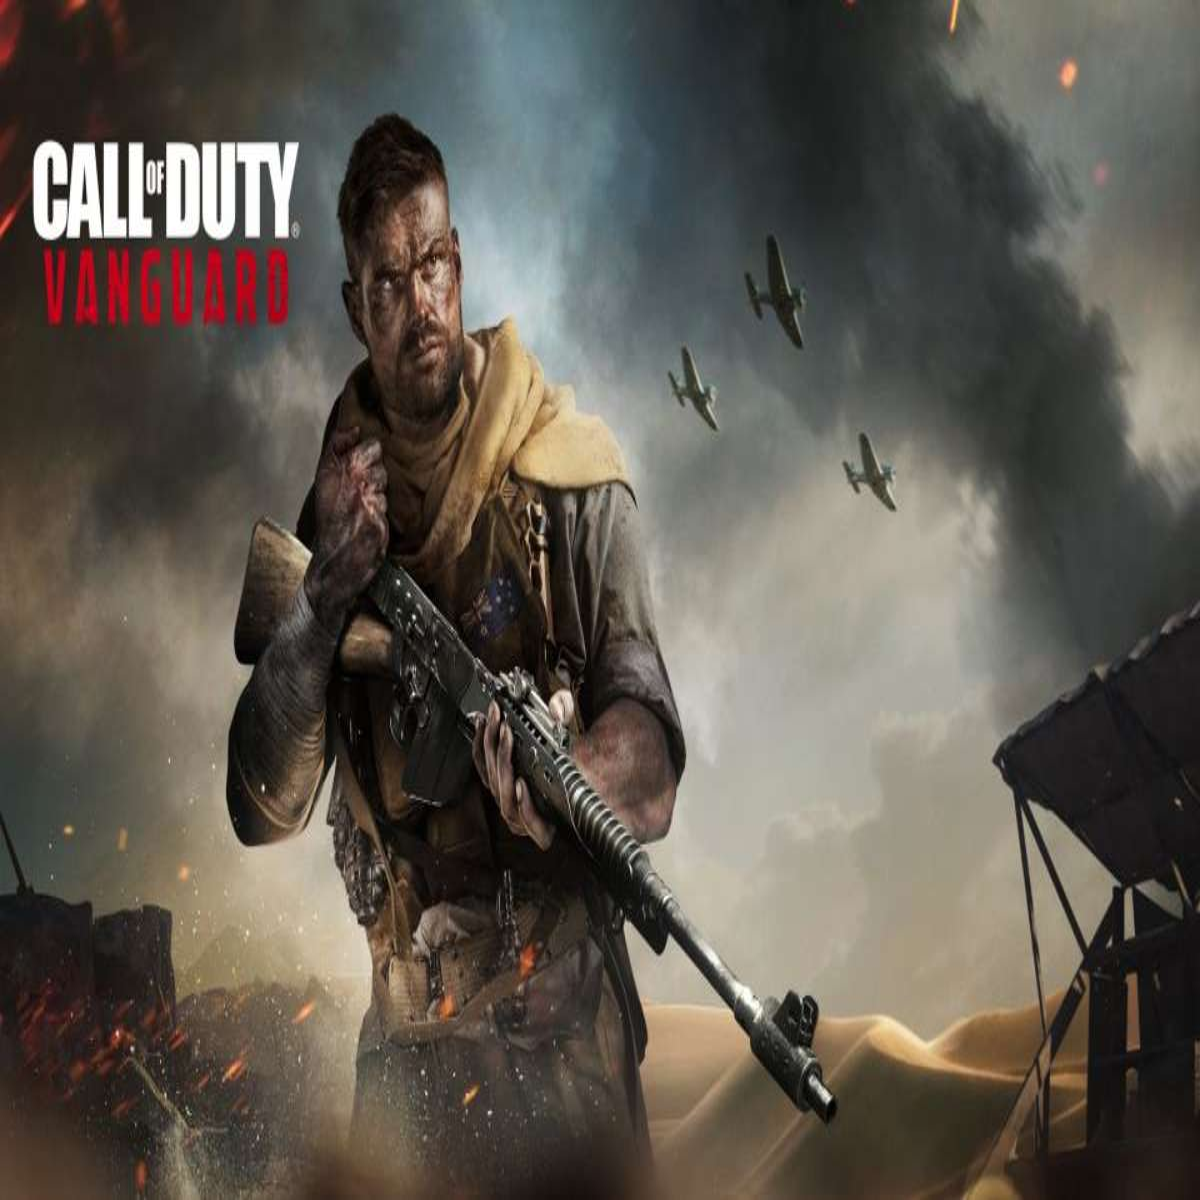 Call of Duty: Vanguard (Multi) – dicas para mandar bem nos